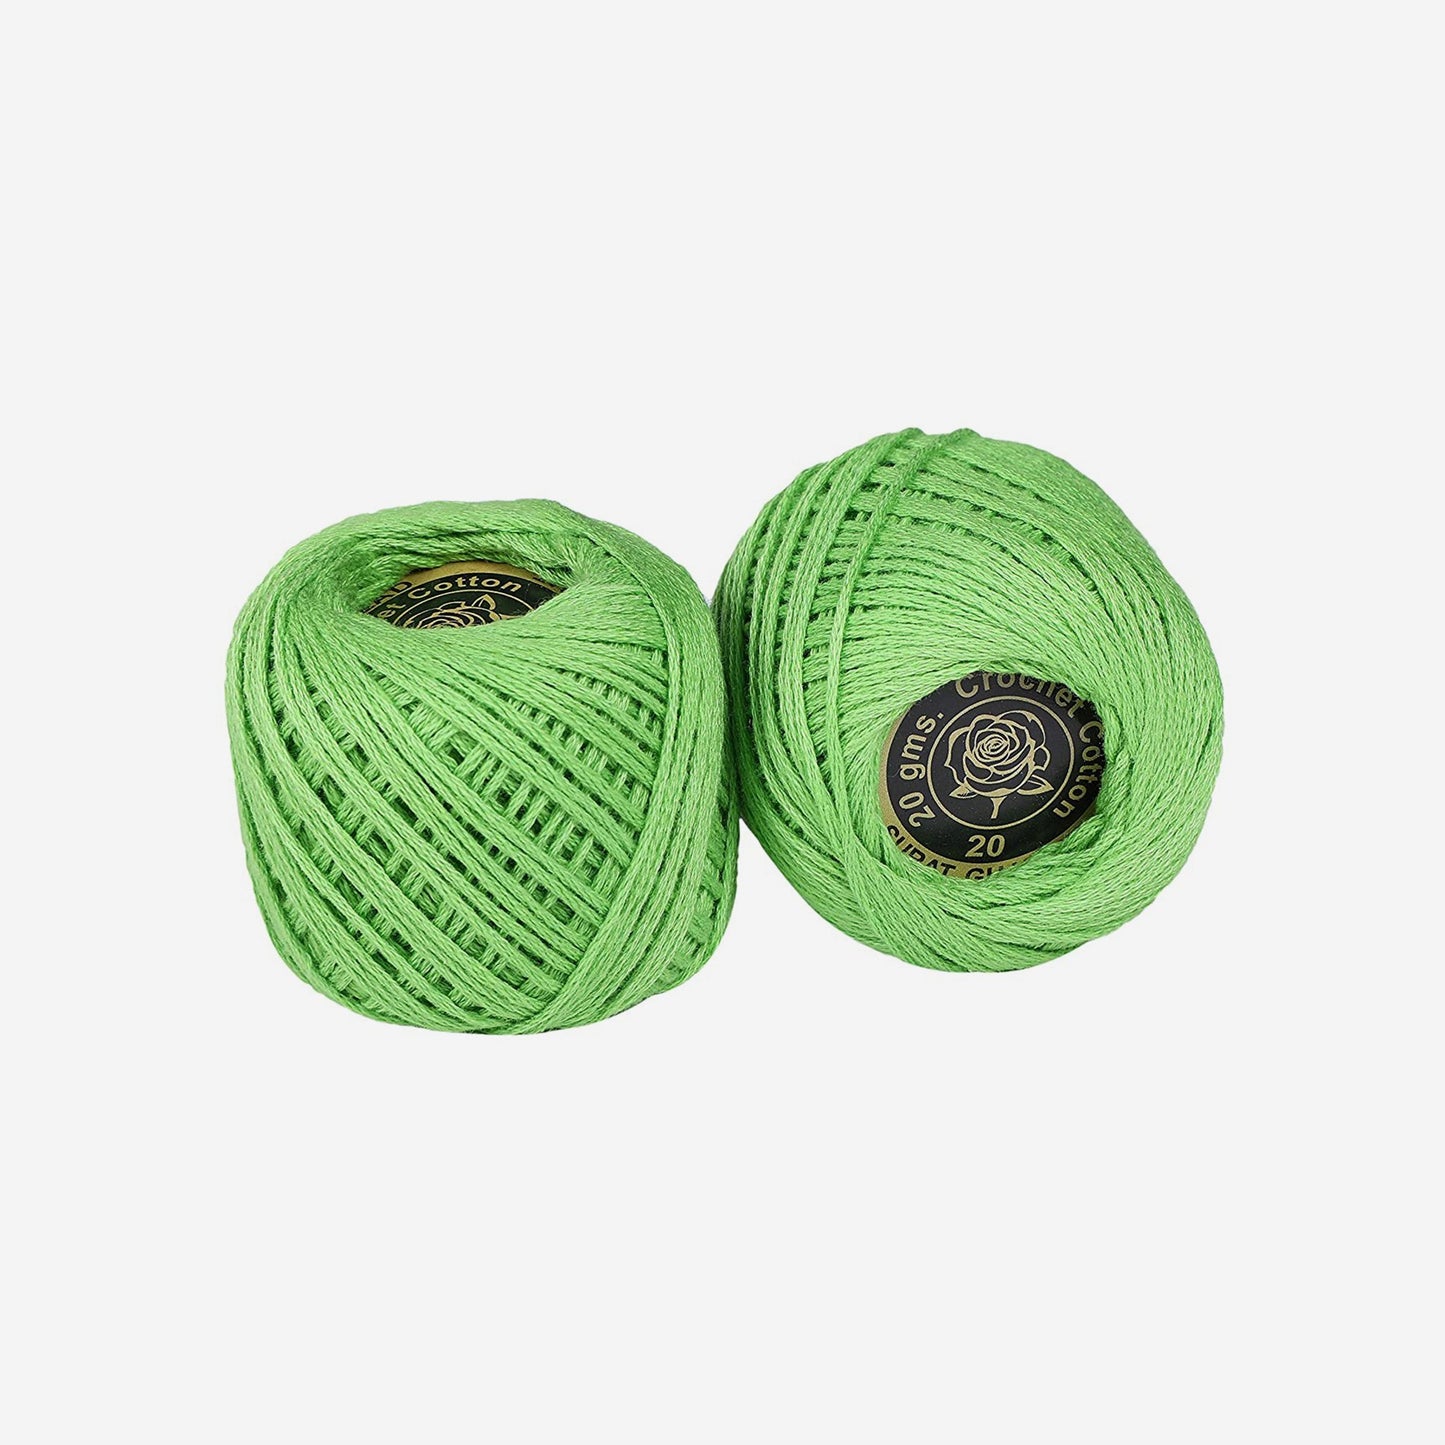 Hand-crochet hoops (Variation 2)